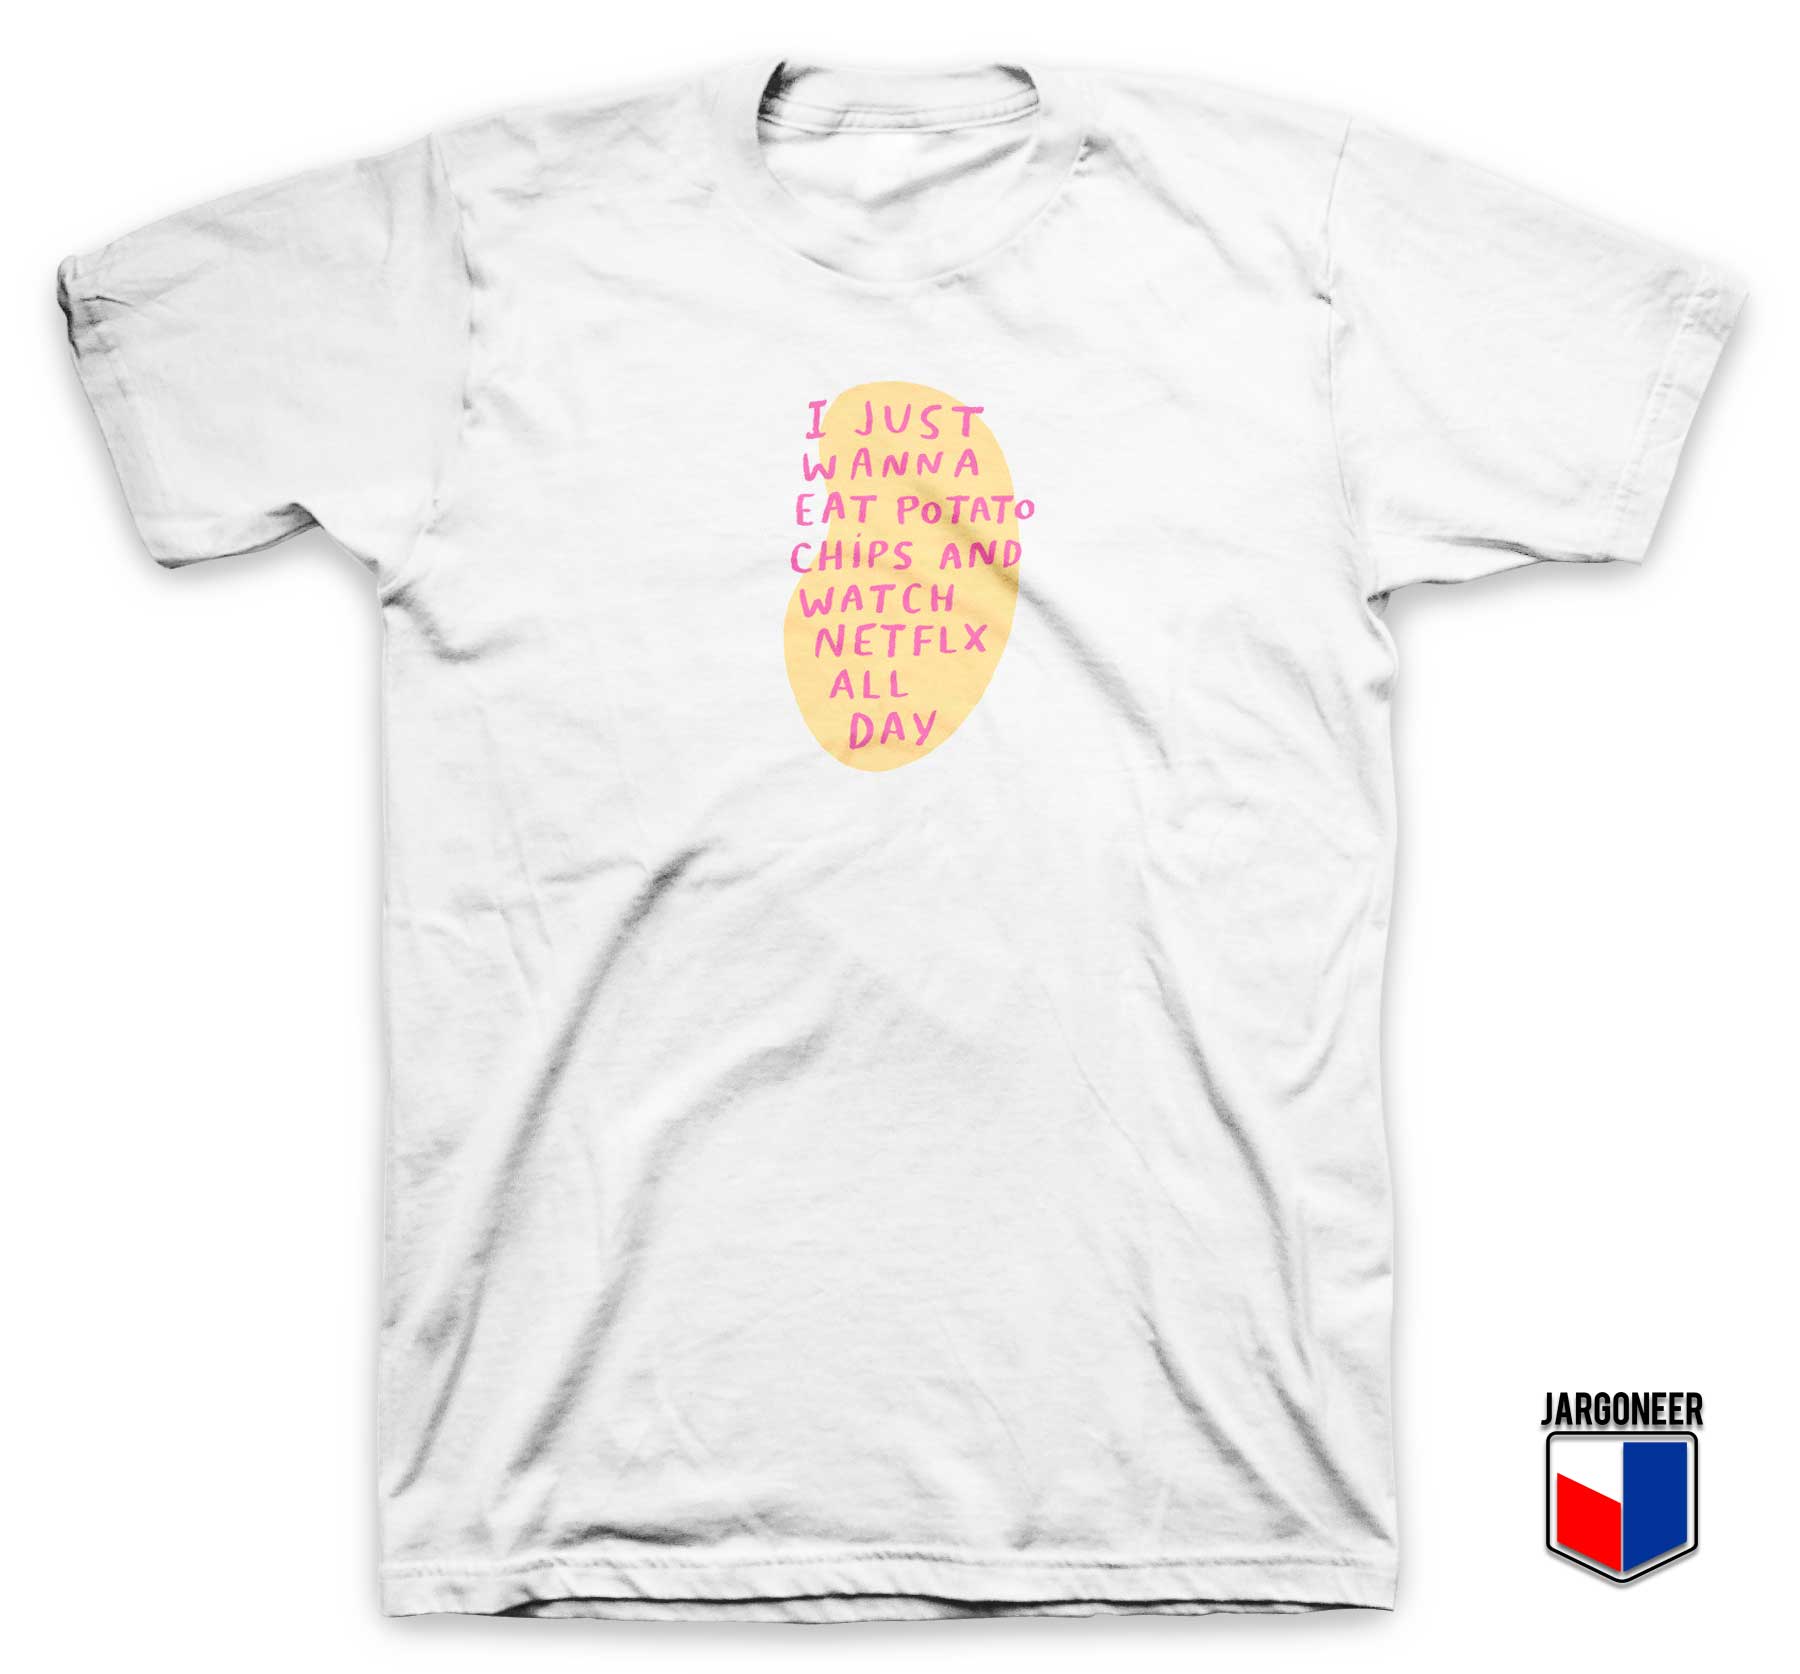 Eat Potato Chips And Watch Netflix T Shirt - Shop Unique Graphic Cool Shirt Designs